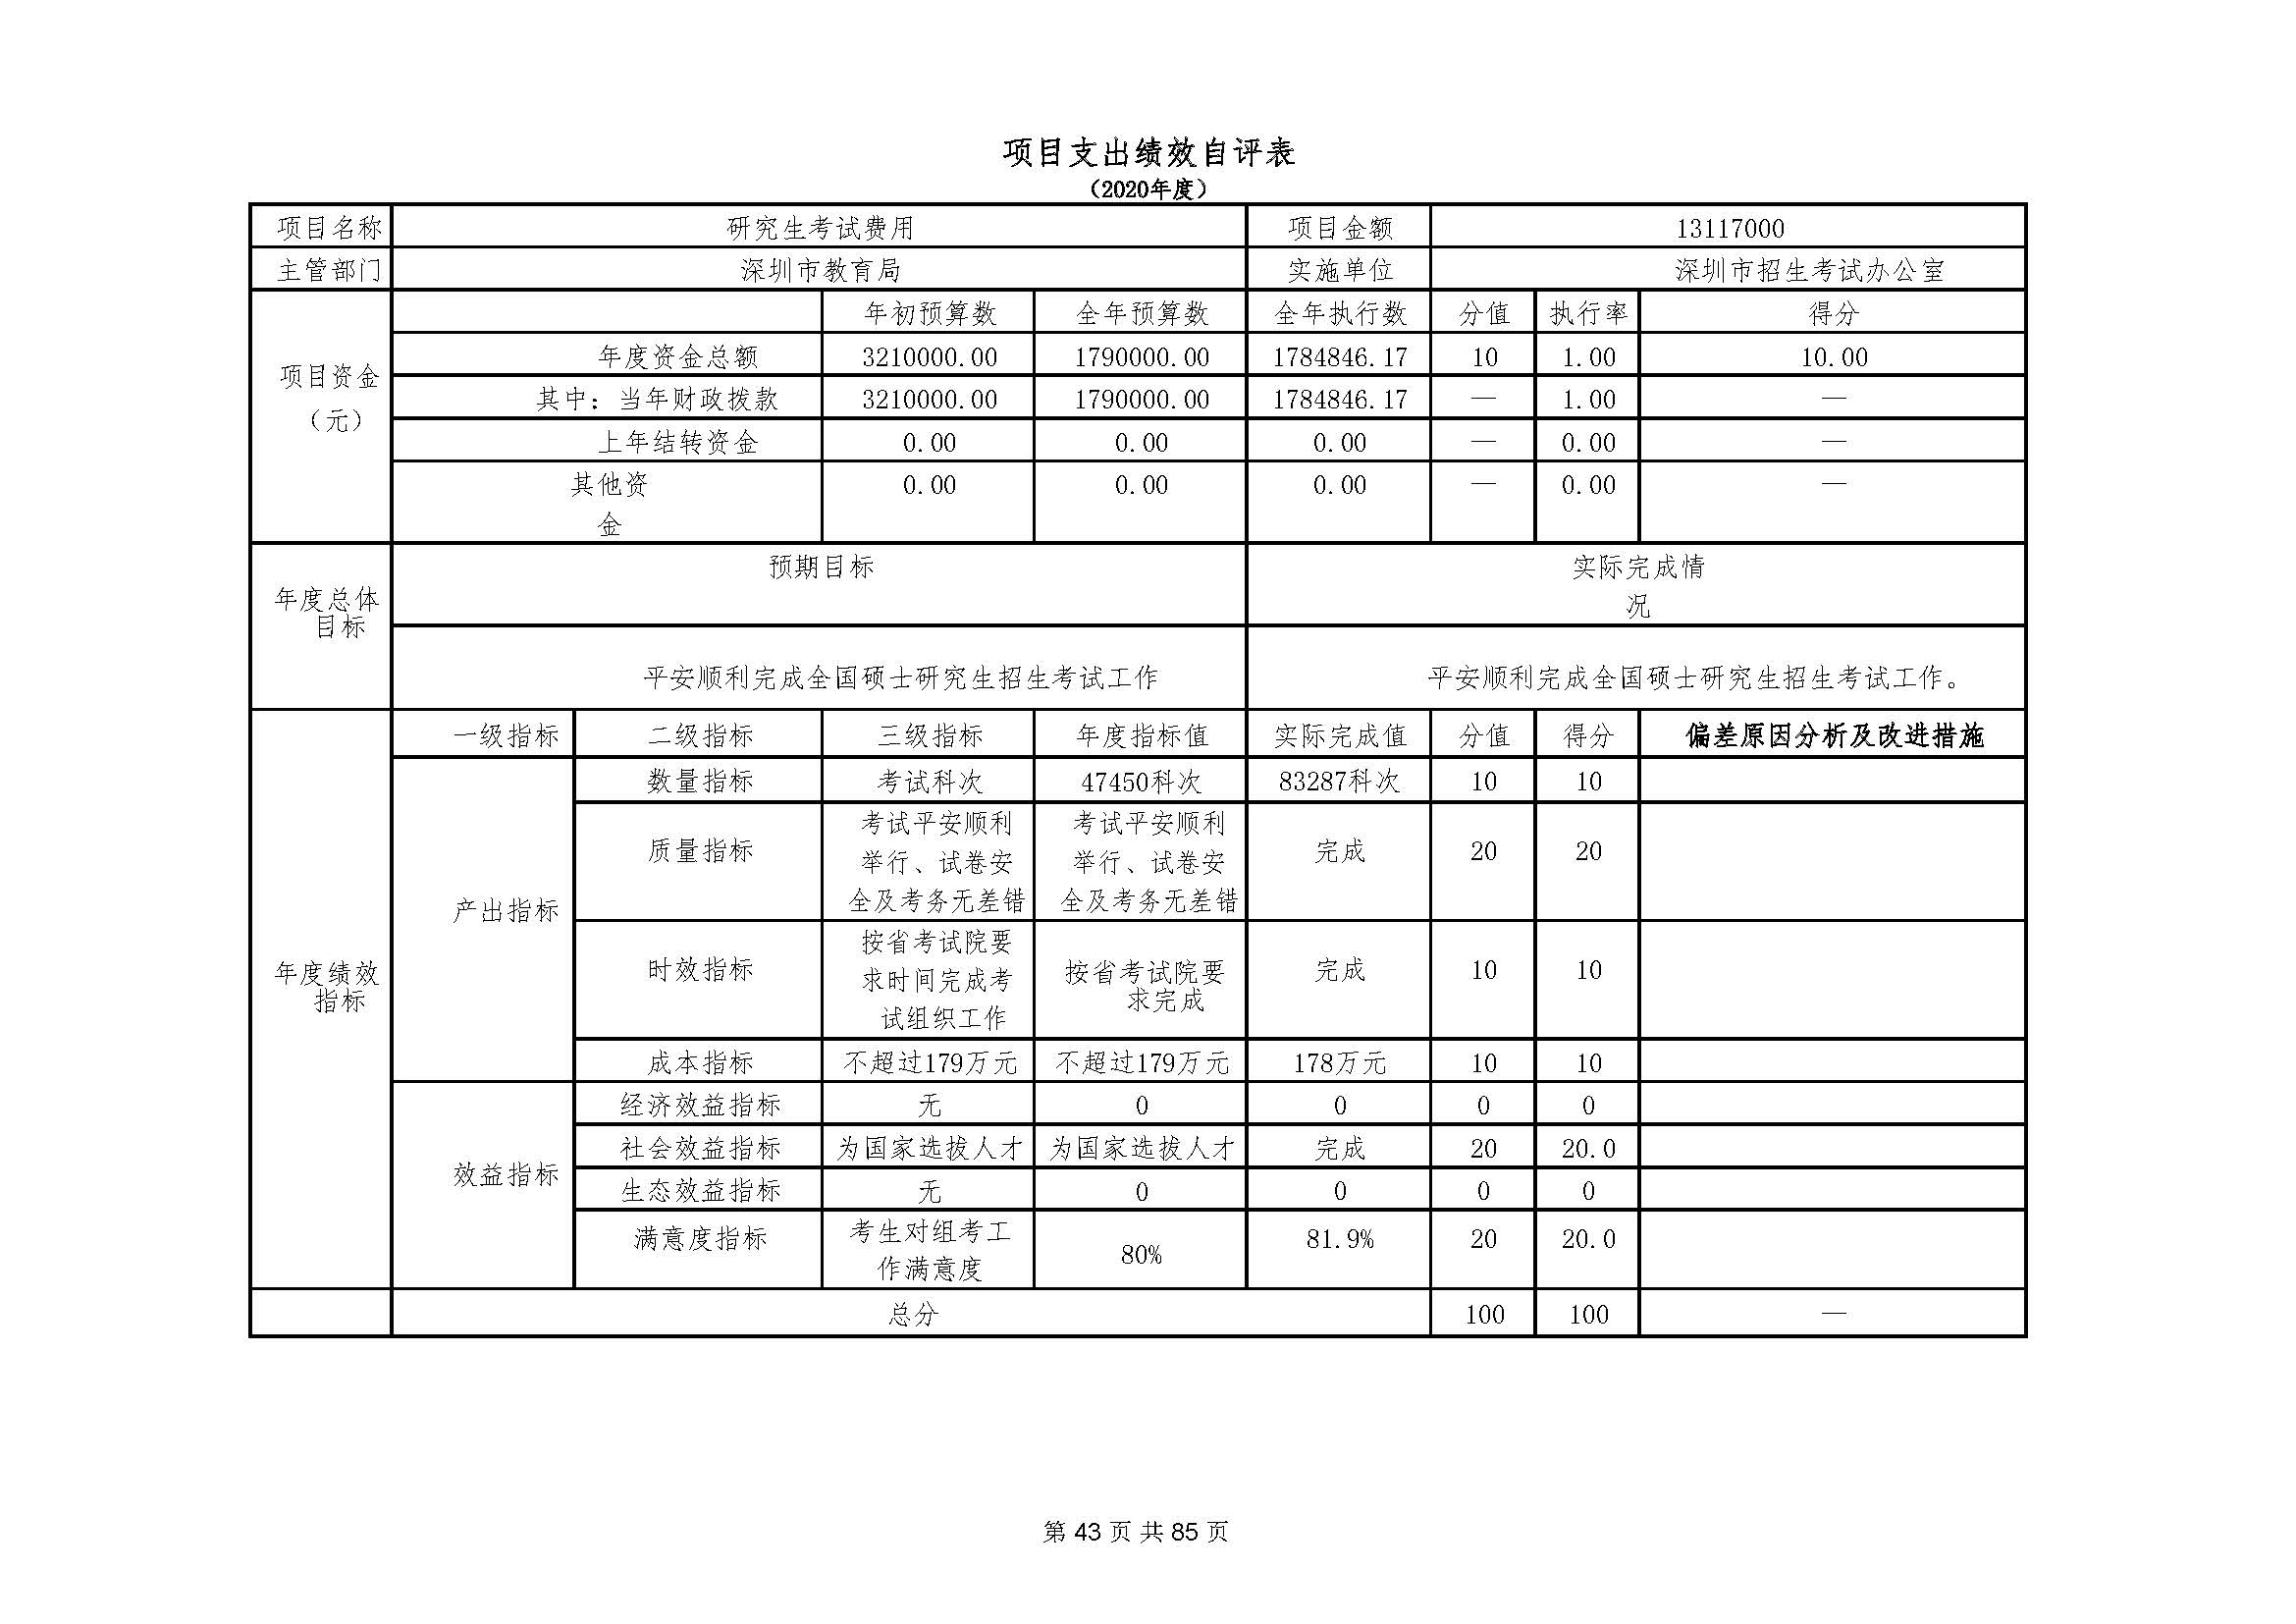 深圳市招生考试办公室2020年度部门决算_页面_44.jpg